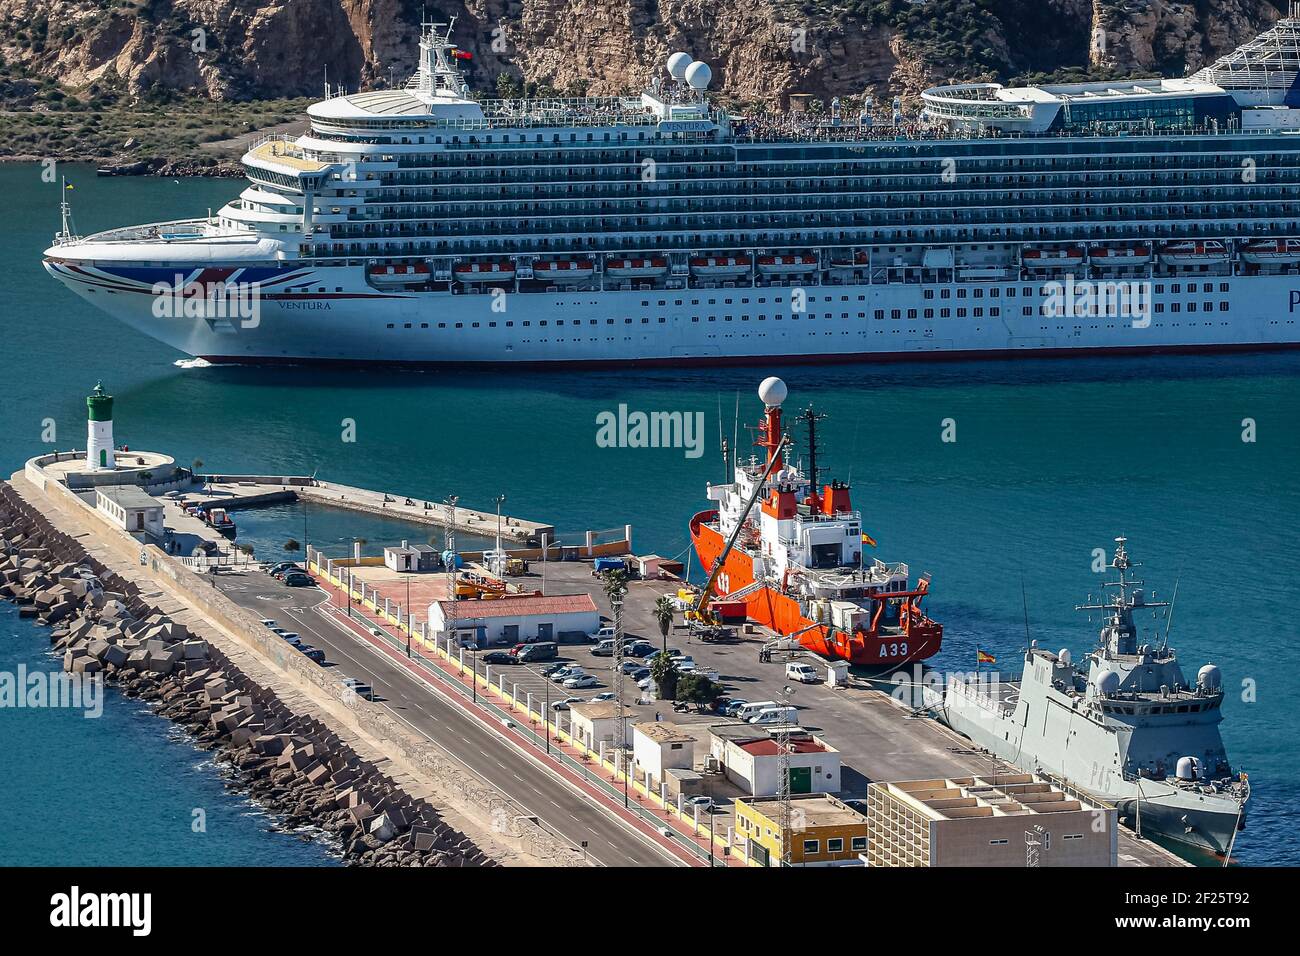 Croisière Ventura au départ du port de Carthagène. ABEL F. ROS/ALAMY Banque D'Images